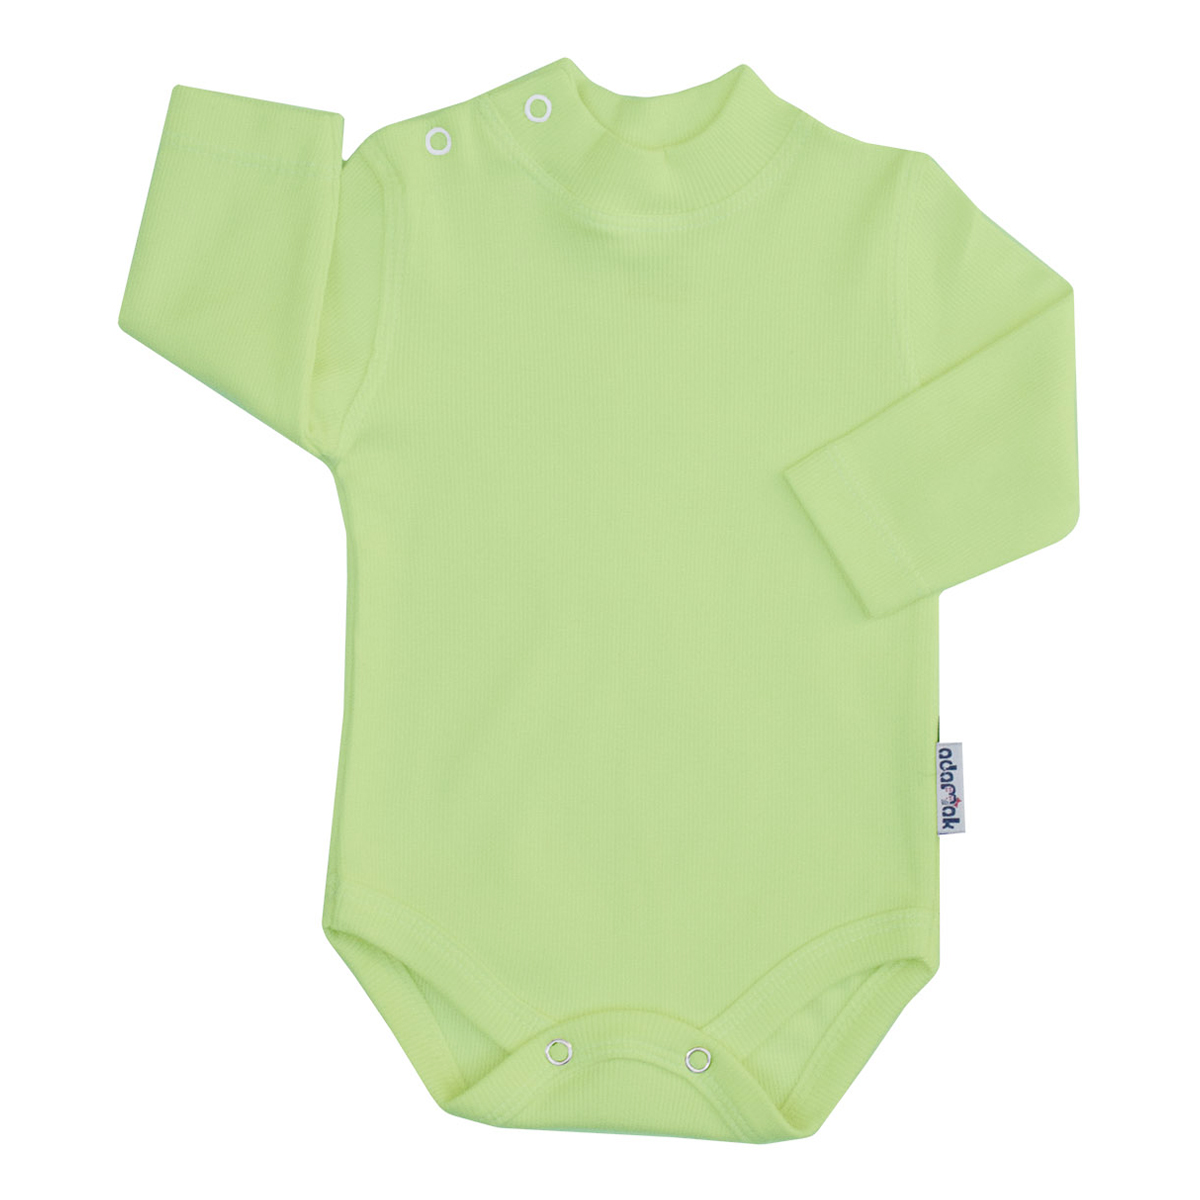 بادی آستین بلند نوزاد آدمک کد 176300 رنگ سبز روشن -  - 1